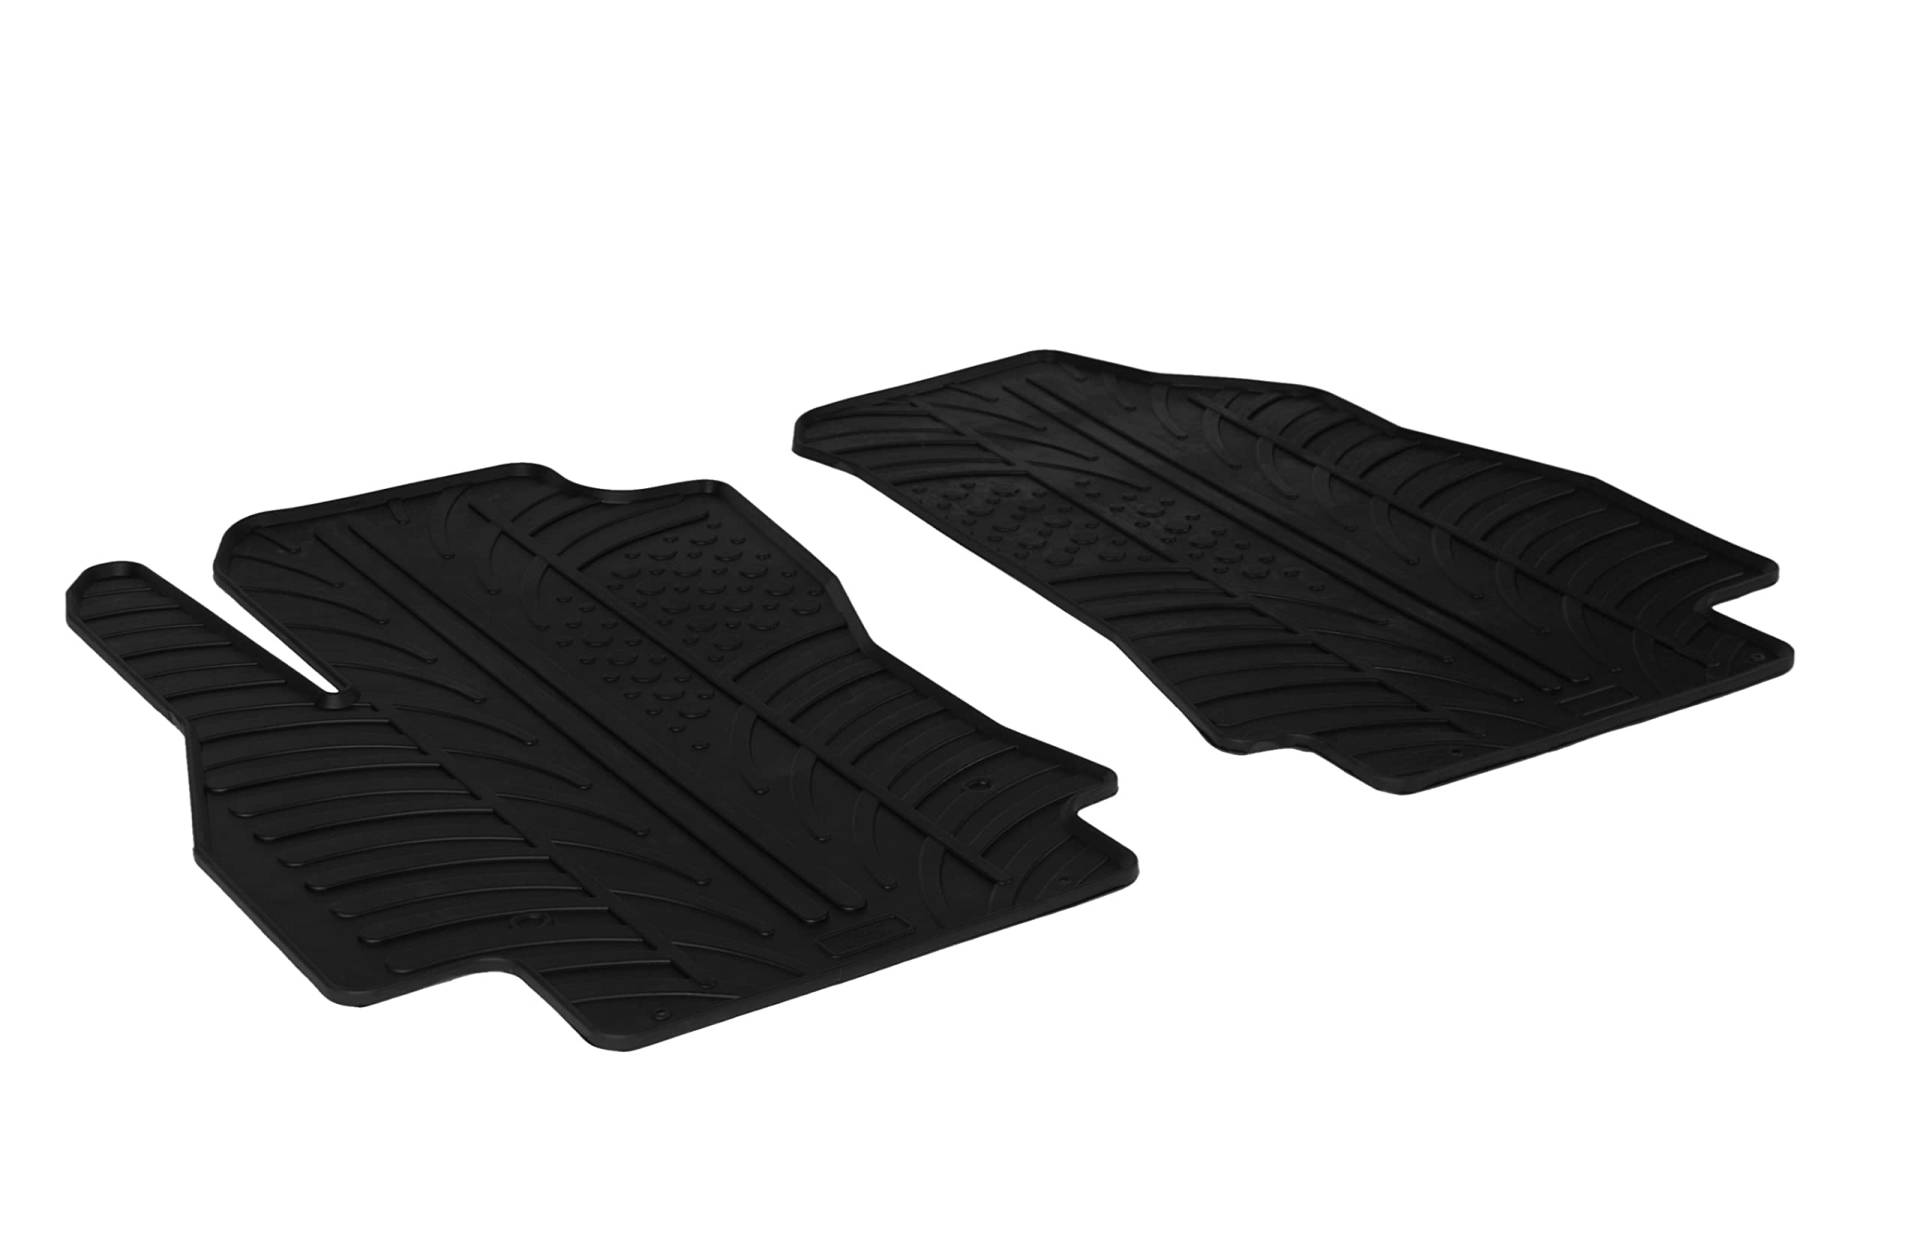 AROBA GL0923 Design Gummi Fußmatten kompatibel mit Citroen Nemo Kastenwagen ab BJ. 01.2007> erhöhter Rand 2 tlg Farbe Schwarz Gummimatten Automatten passgenau von AROBA